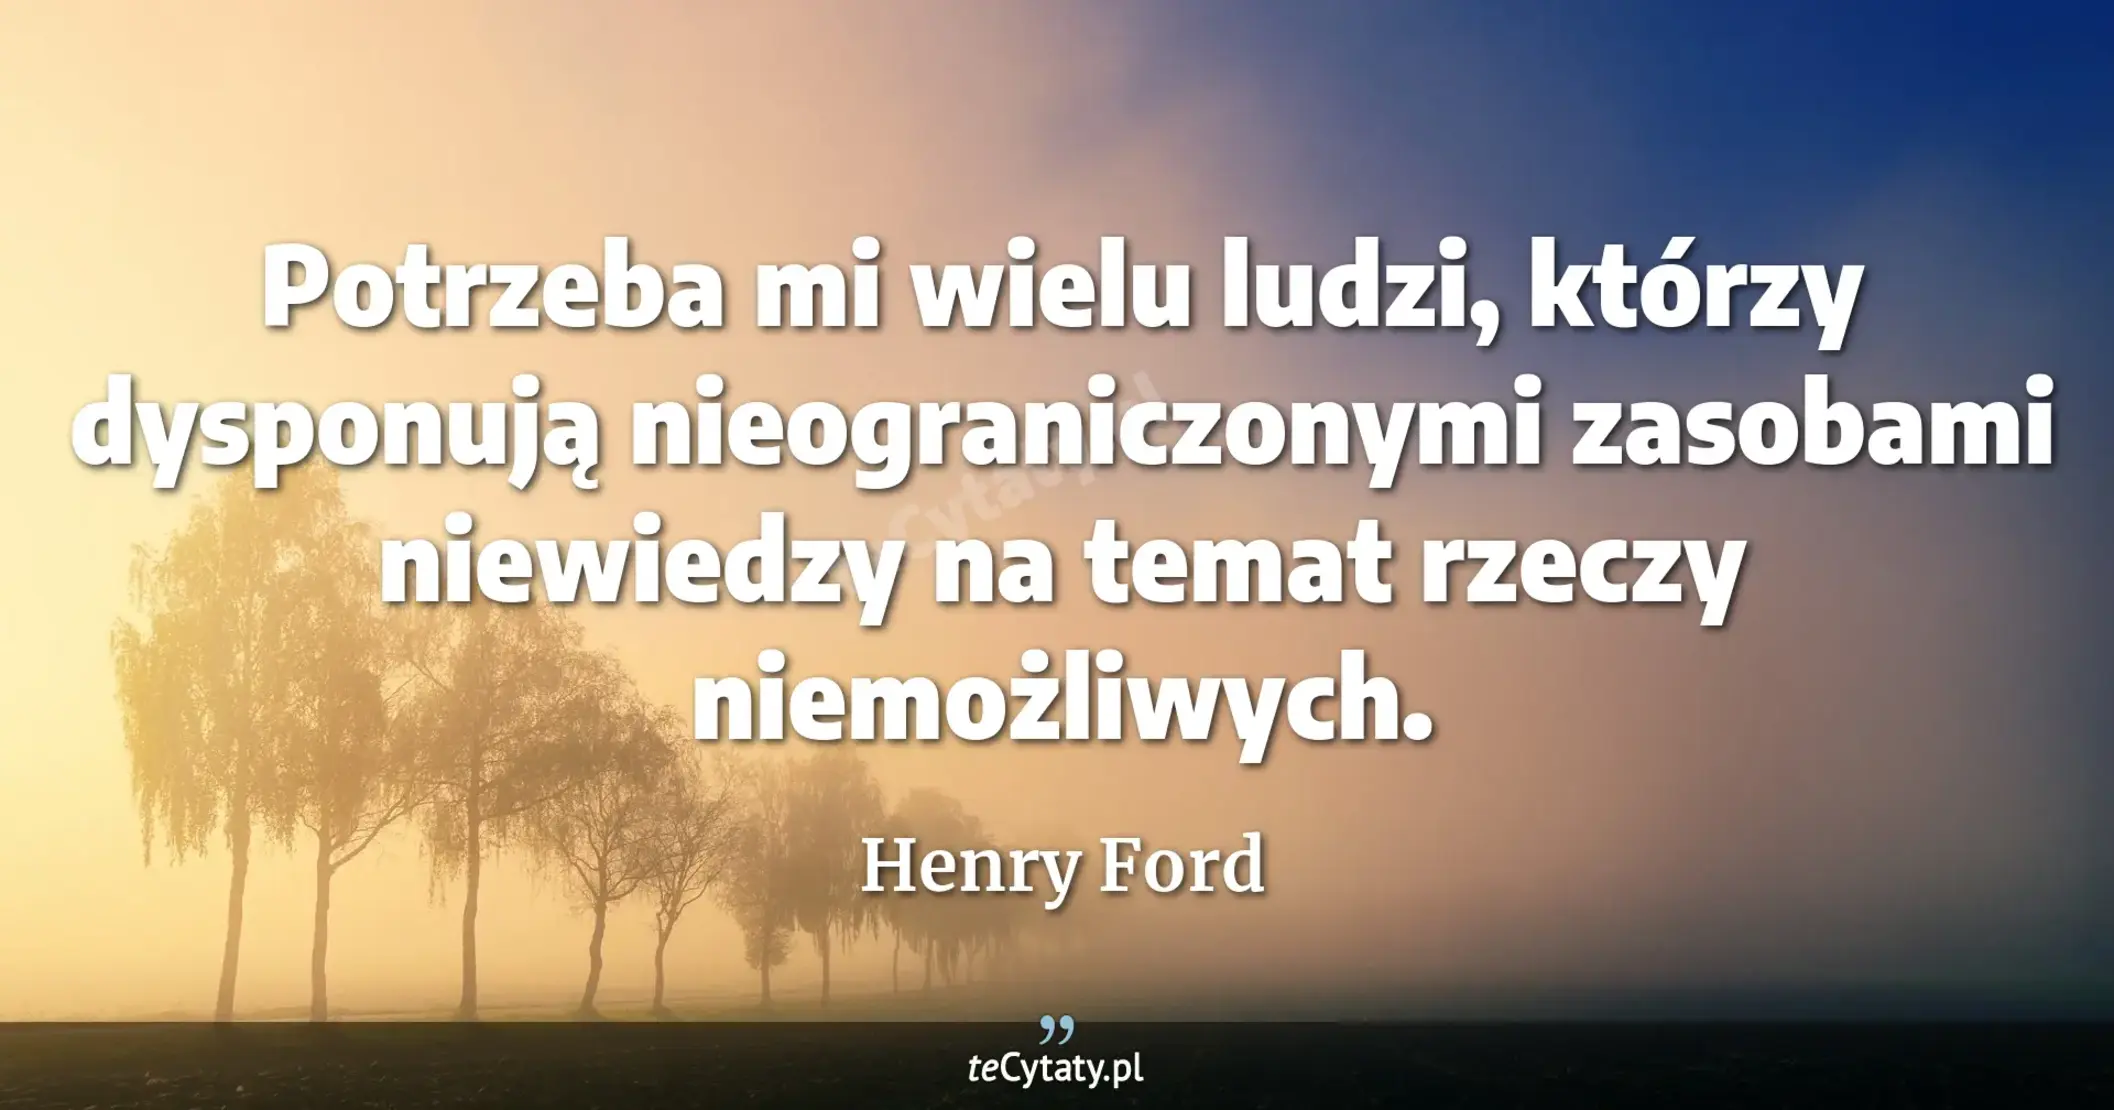 Potrzeba mi wielu ludzi, którzy dysponują nieograniczonymi zasobami niewiedzy na temat rzeczy niemożliwych. - Henry Ford